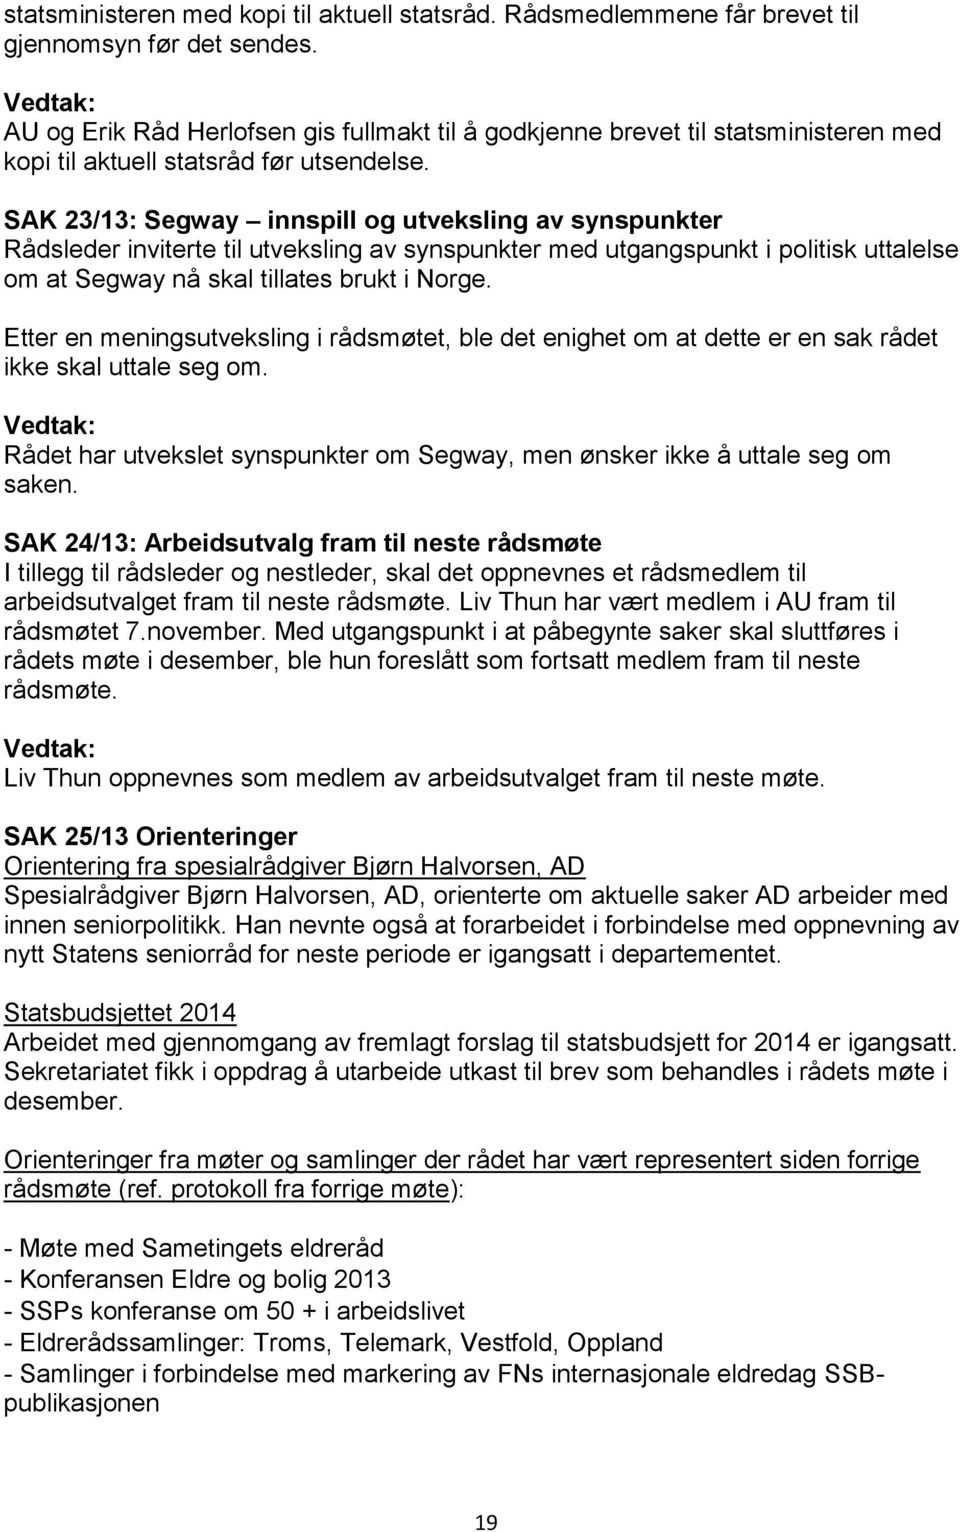 SAK 23/13: Segway innspill og utveksling av synspunkter Rådsleder inviterte til utveksling av synspunkter med utgangspunkt i politisk uttalelse om at Segway nå skal tillates brukt i Norge.